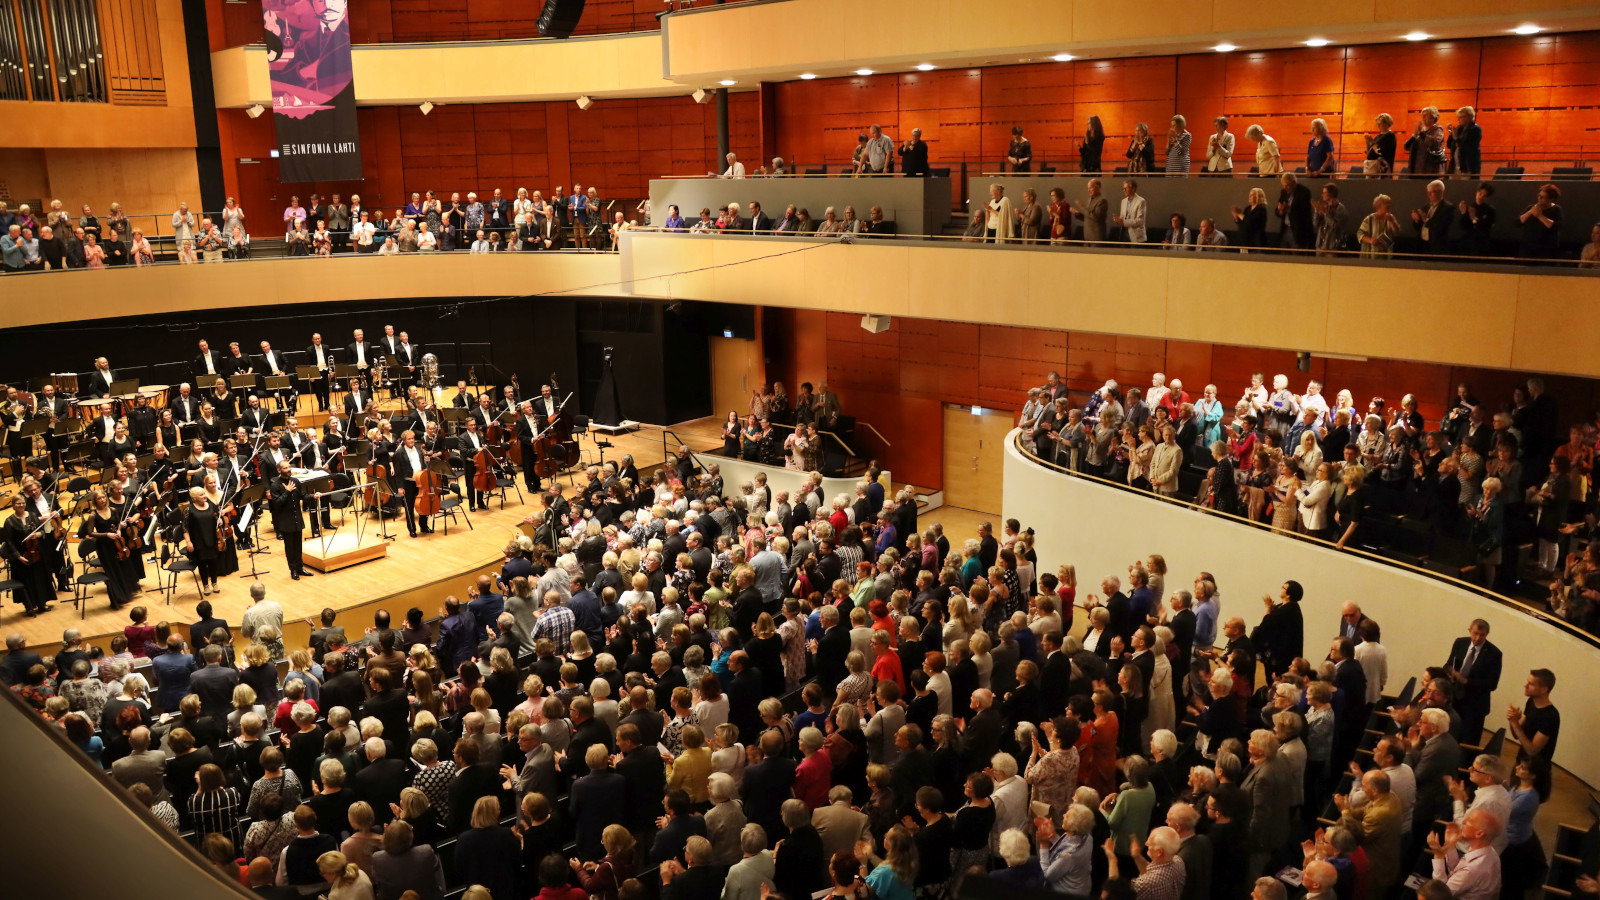 Kuva on Sibelius-talon konserttisalin konsertista, jossa on orkesteri kiittämässä ja sali täynnä yleisöä. 